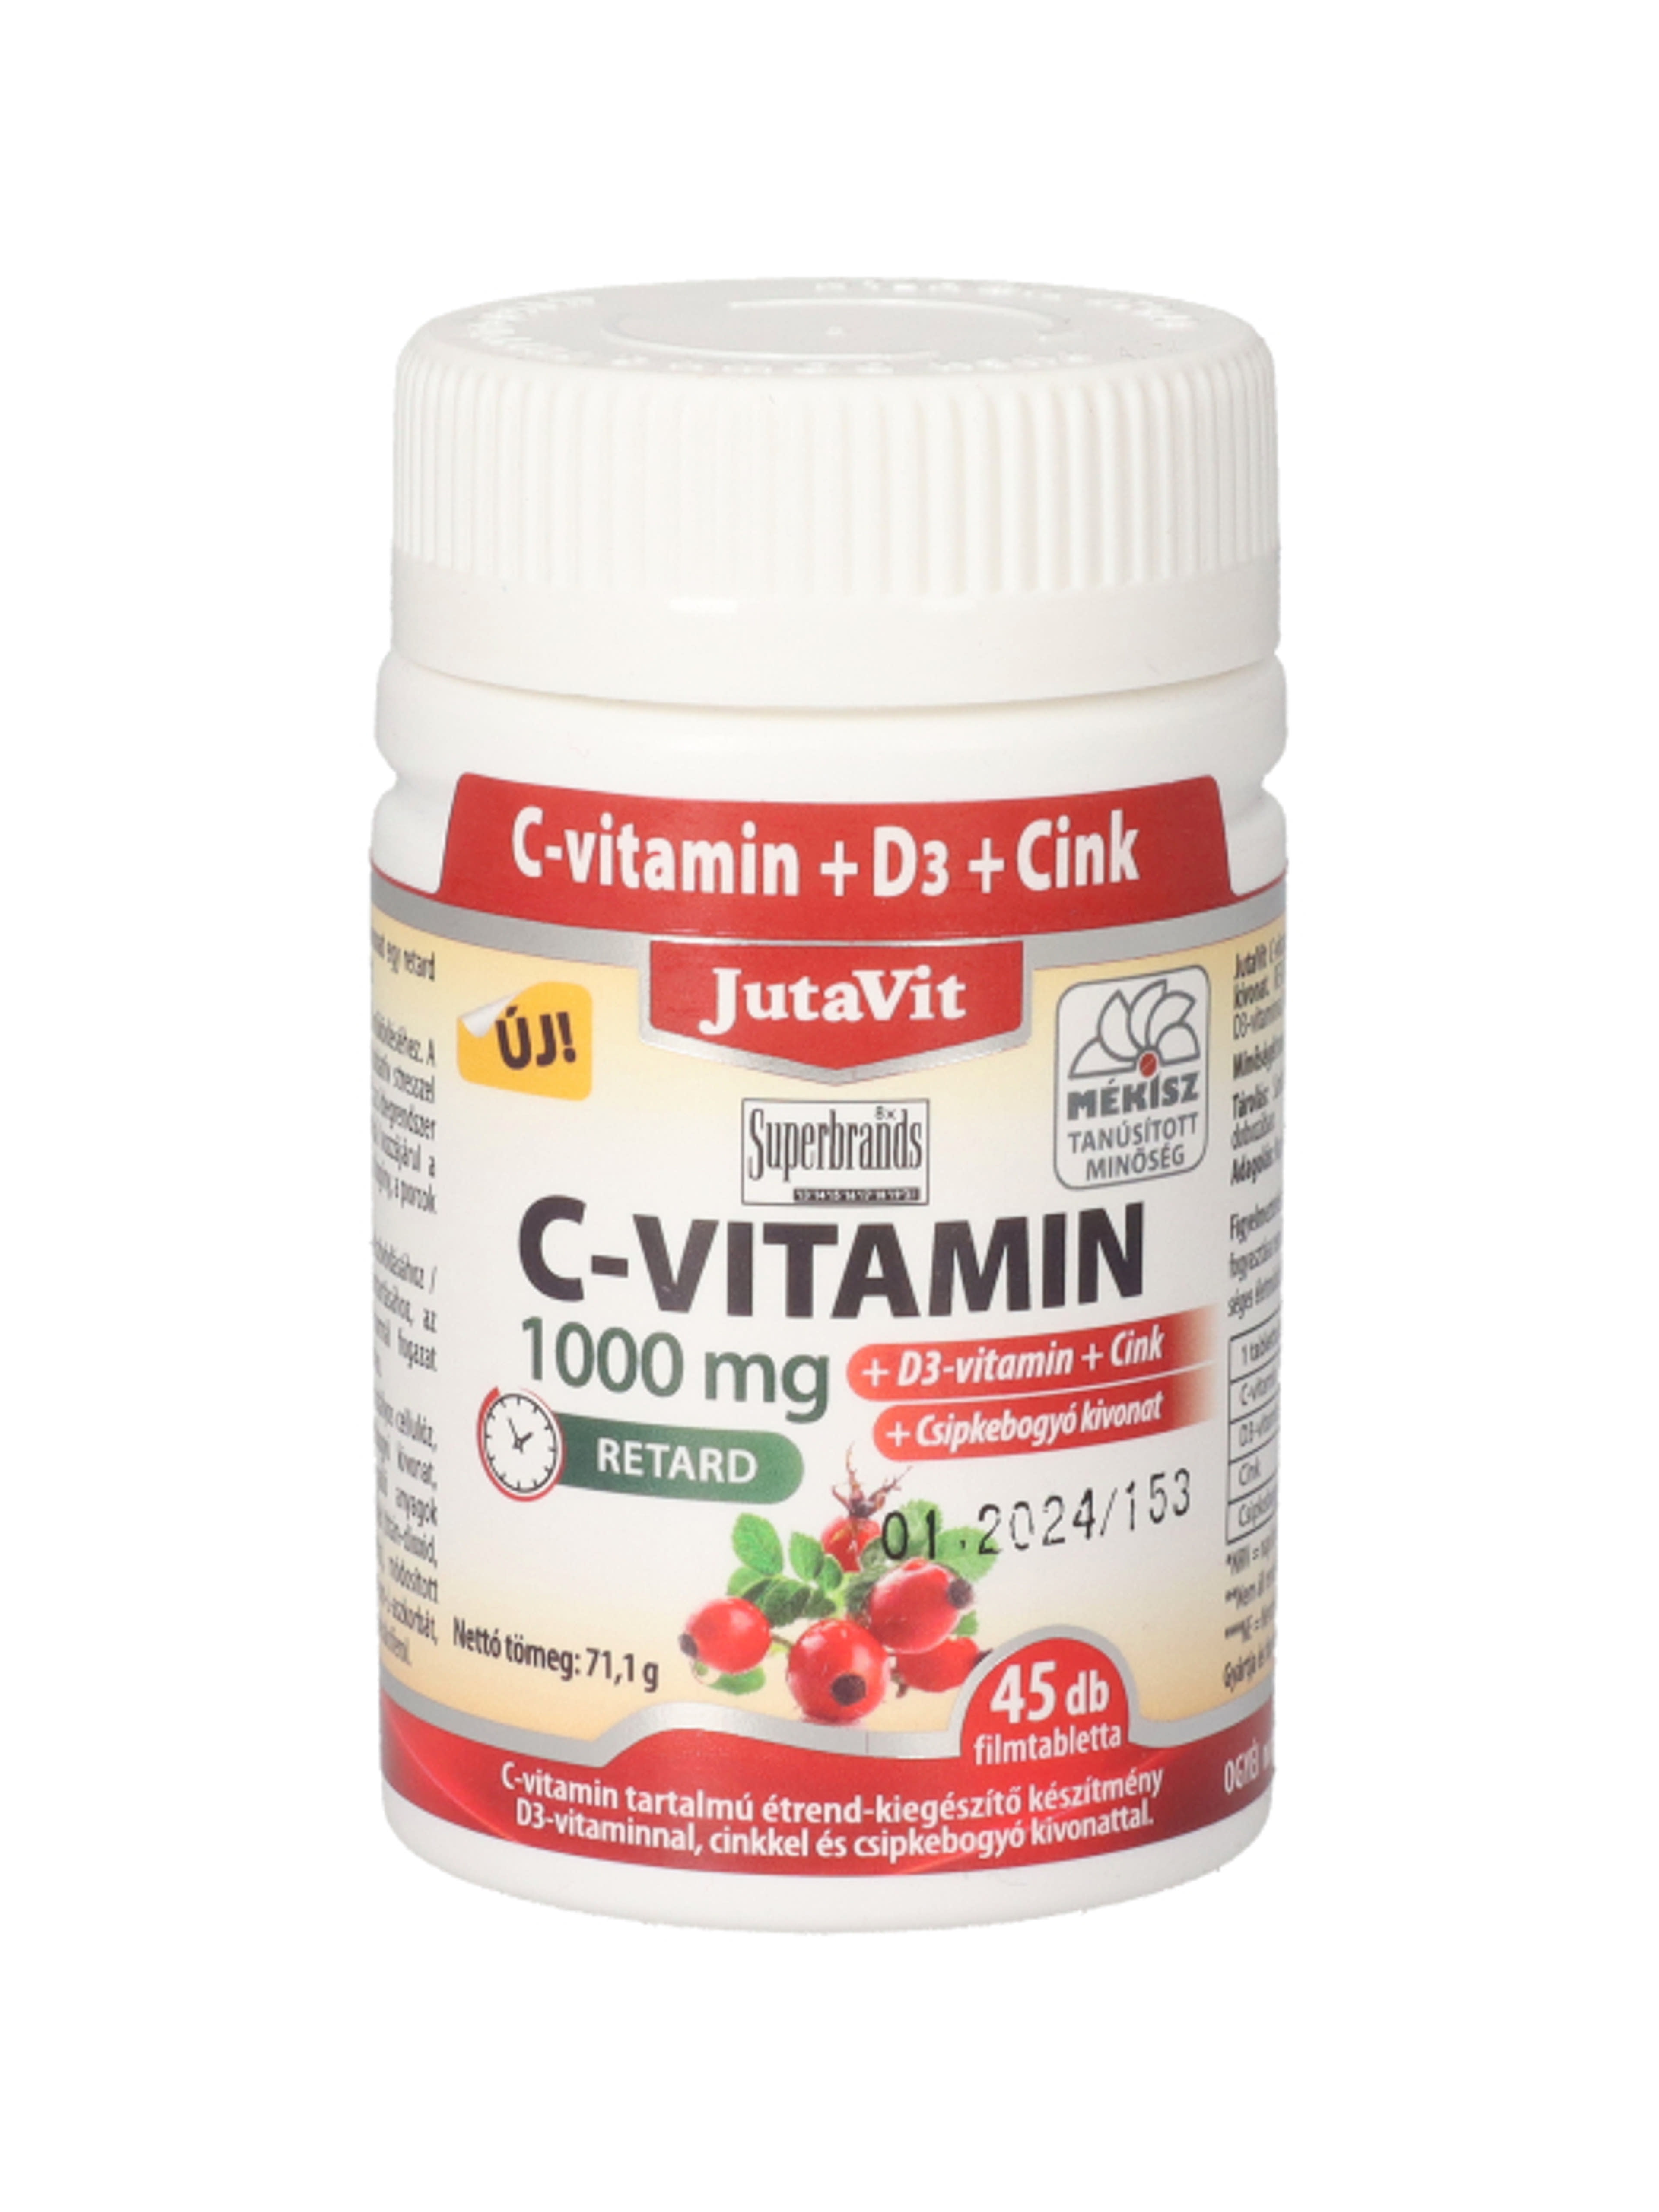 JutaVit C-vitamin 1000 mg + D3 + Cink + csipkebogyó étrend-kiegészítő filmtabletta - 45 db-1